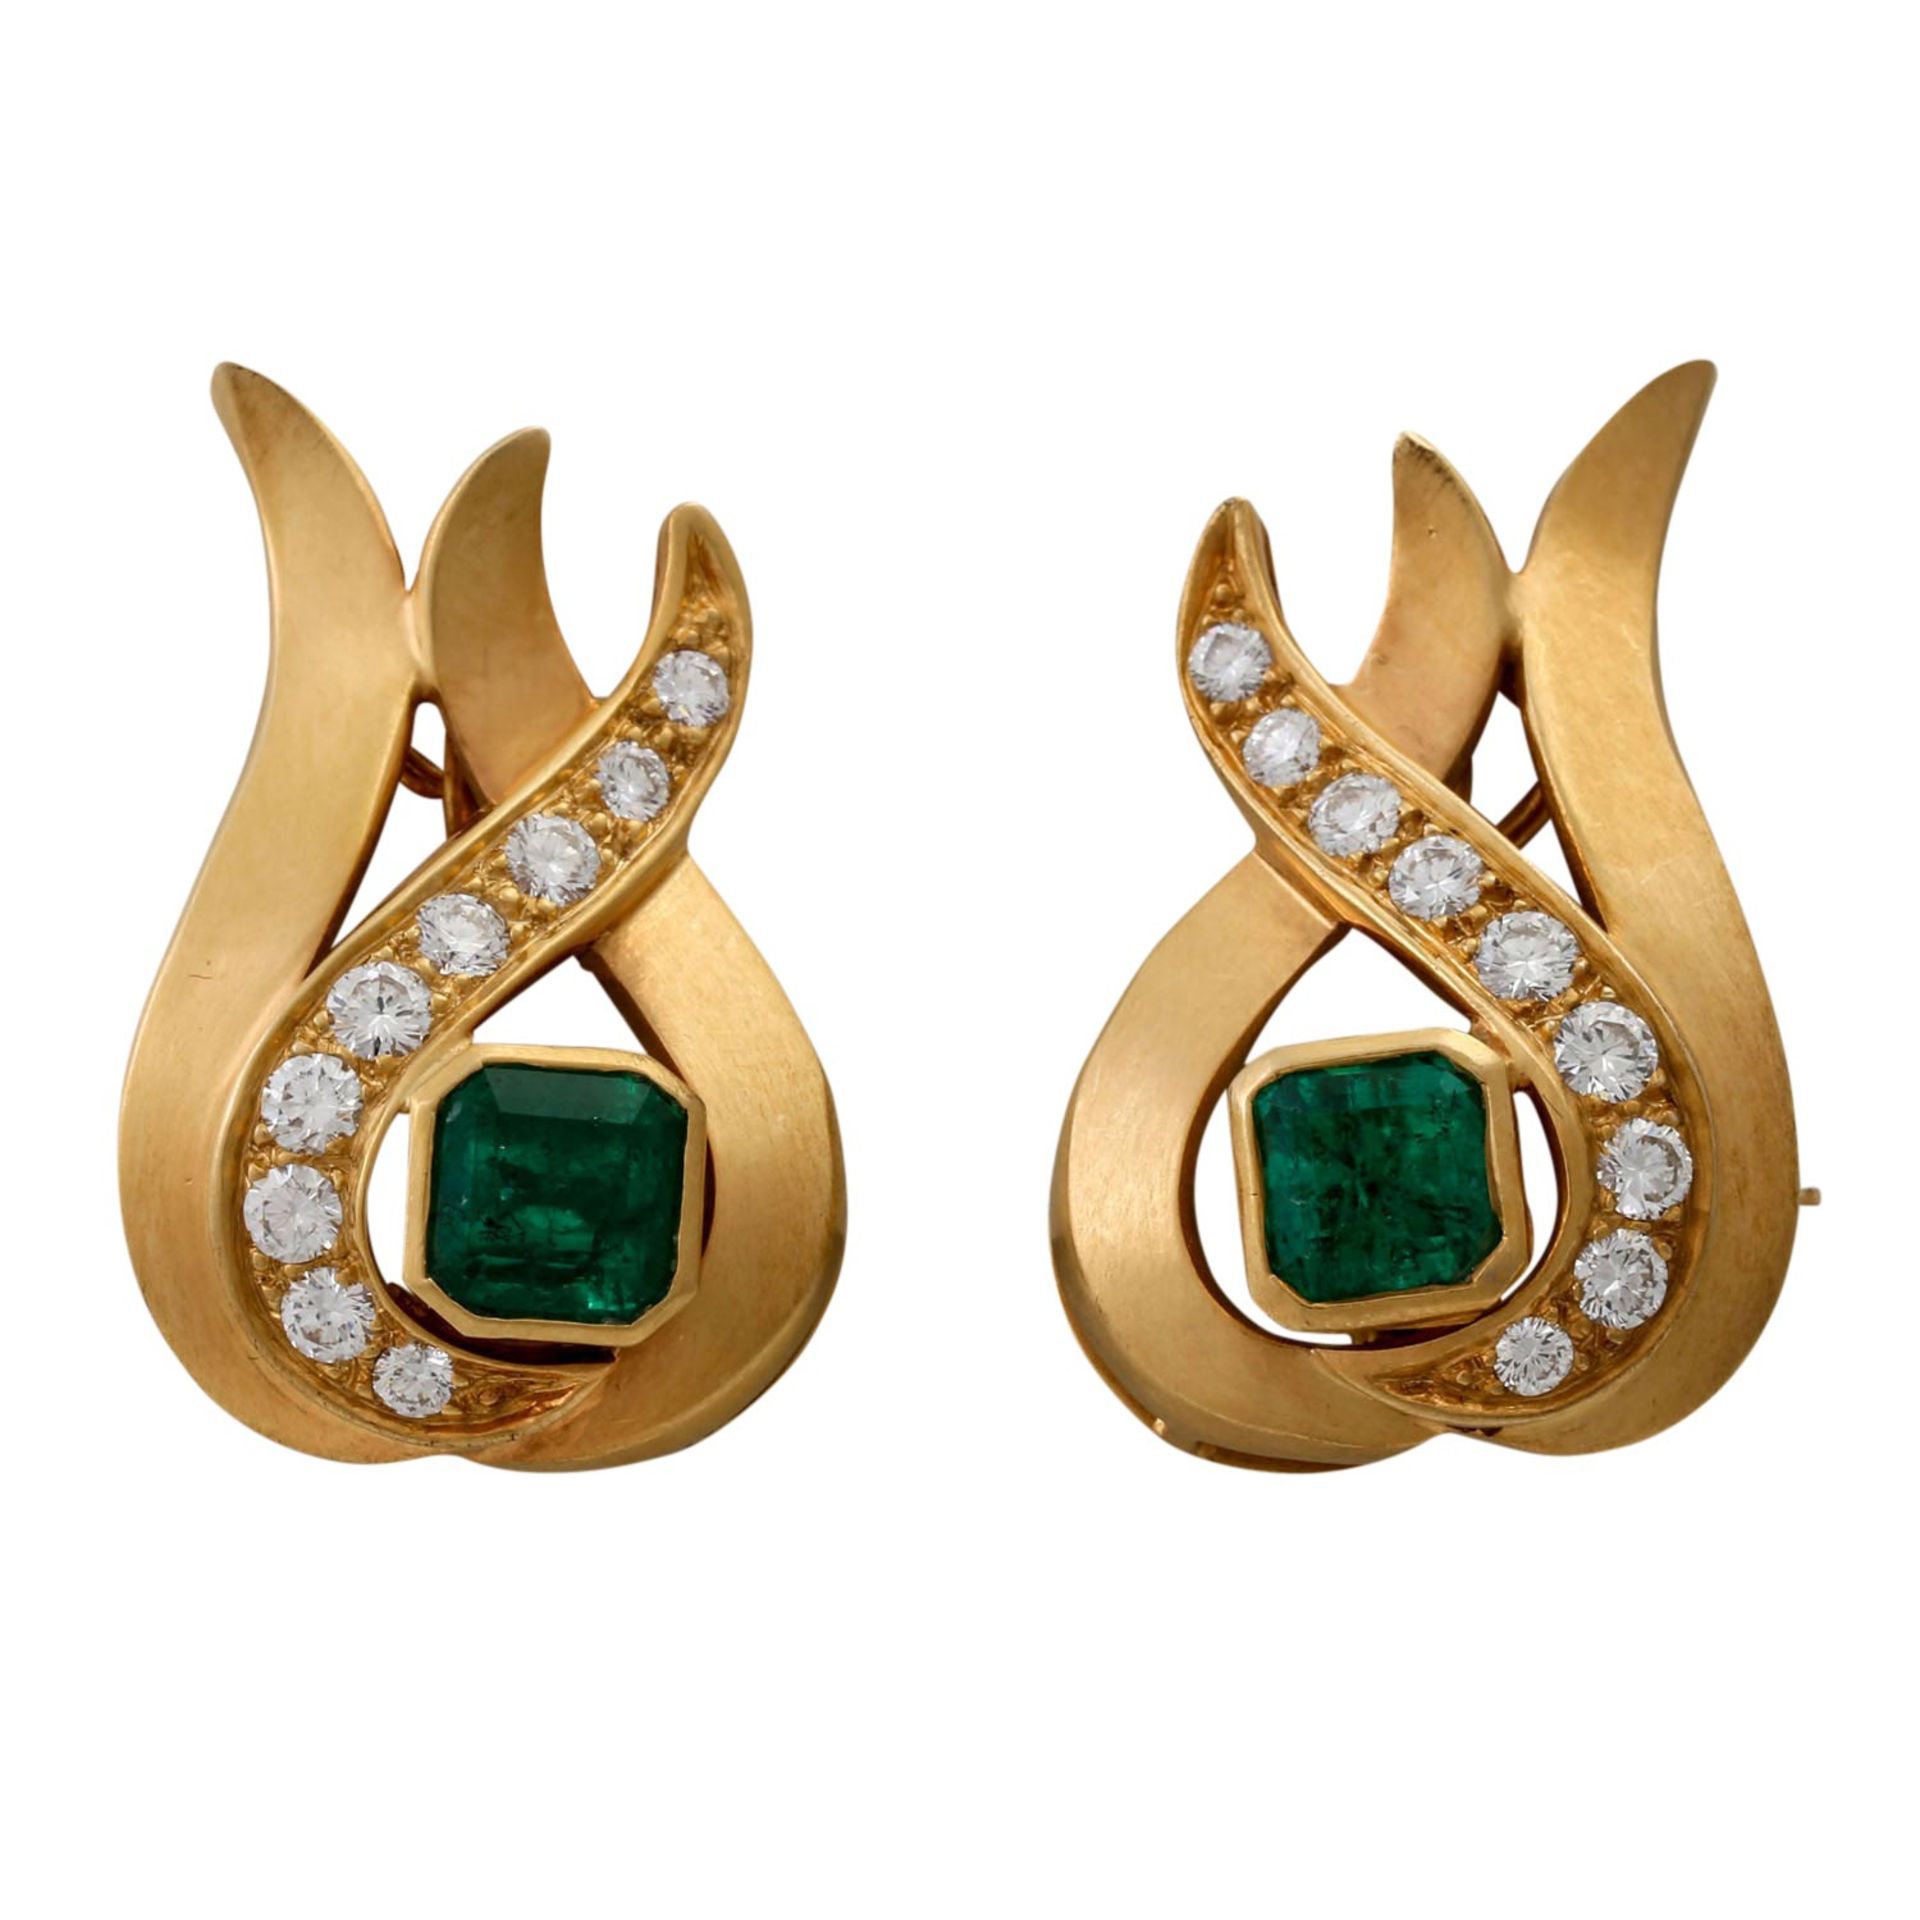 Paar Ohrringe mit feinen Smaragden und Brillantenvon zus. ca. 0,8 ct, ca. FW (G)/VS, S